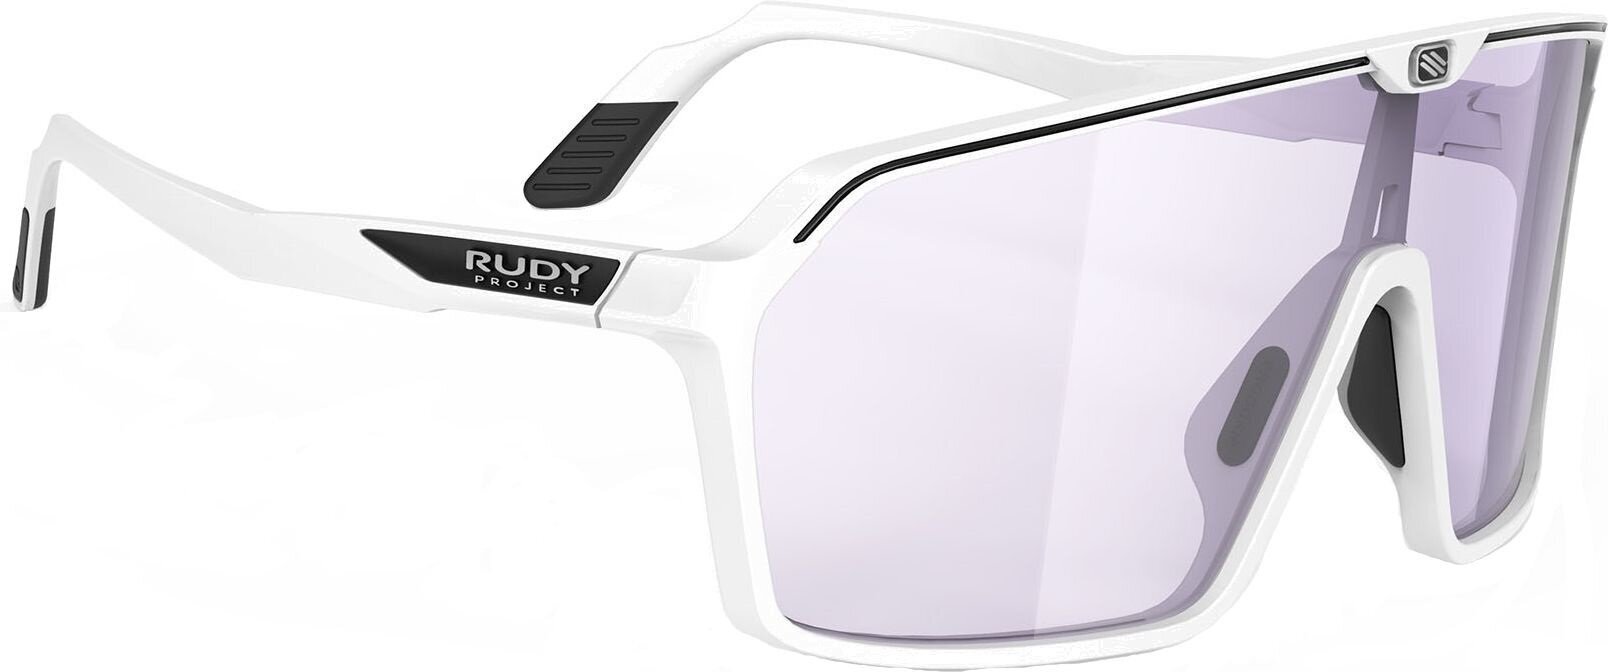 Γυαλιά Ηλίου Lifestyle Rudy Project Spinshield Γυαλιά Ηλίου Lifestyle